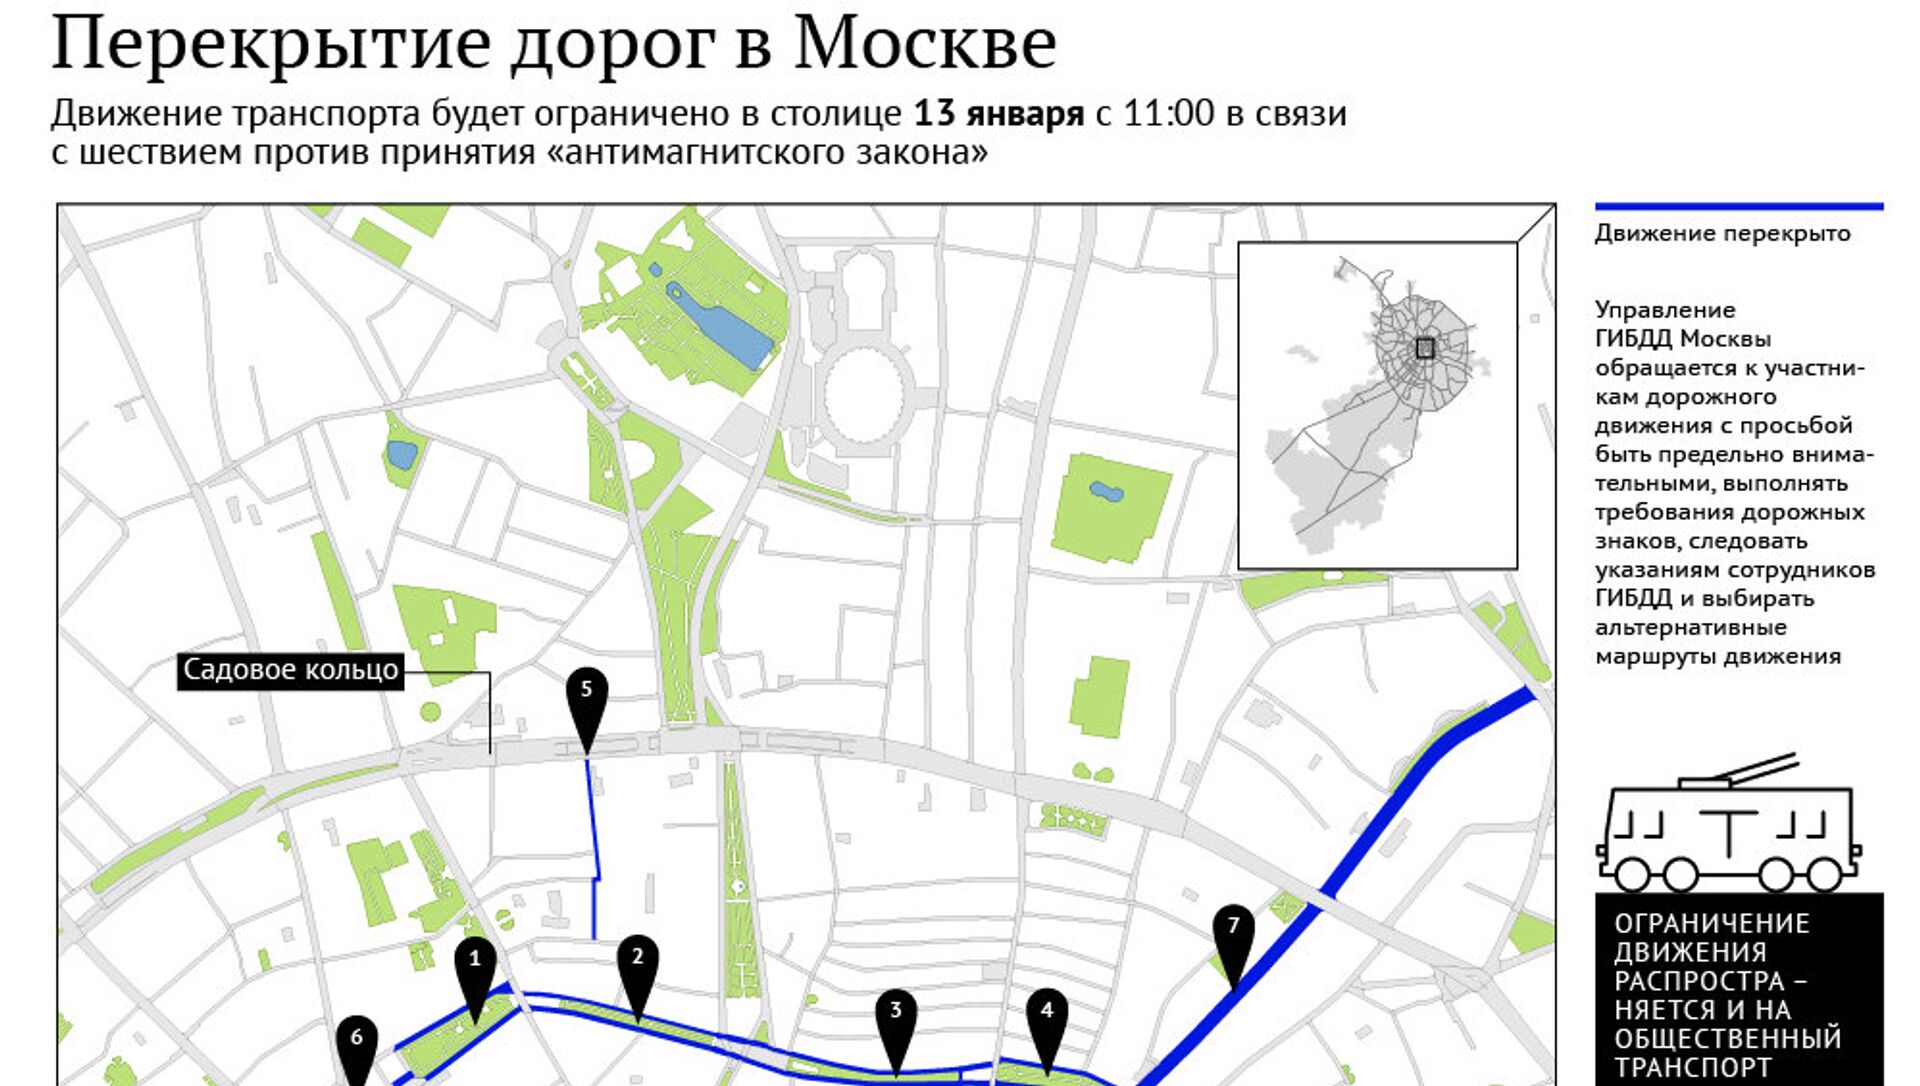 Почему перекрыли дороги сегодня. Перекрытие дорог в Москве. Схема перекрытия движения. Перекрытия в Москве. Перекрытие дорог в Москве схема.